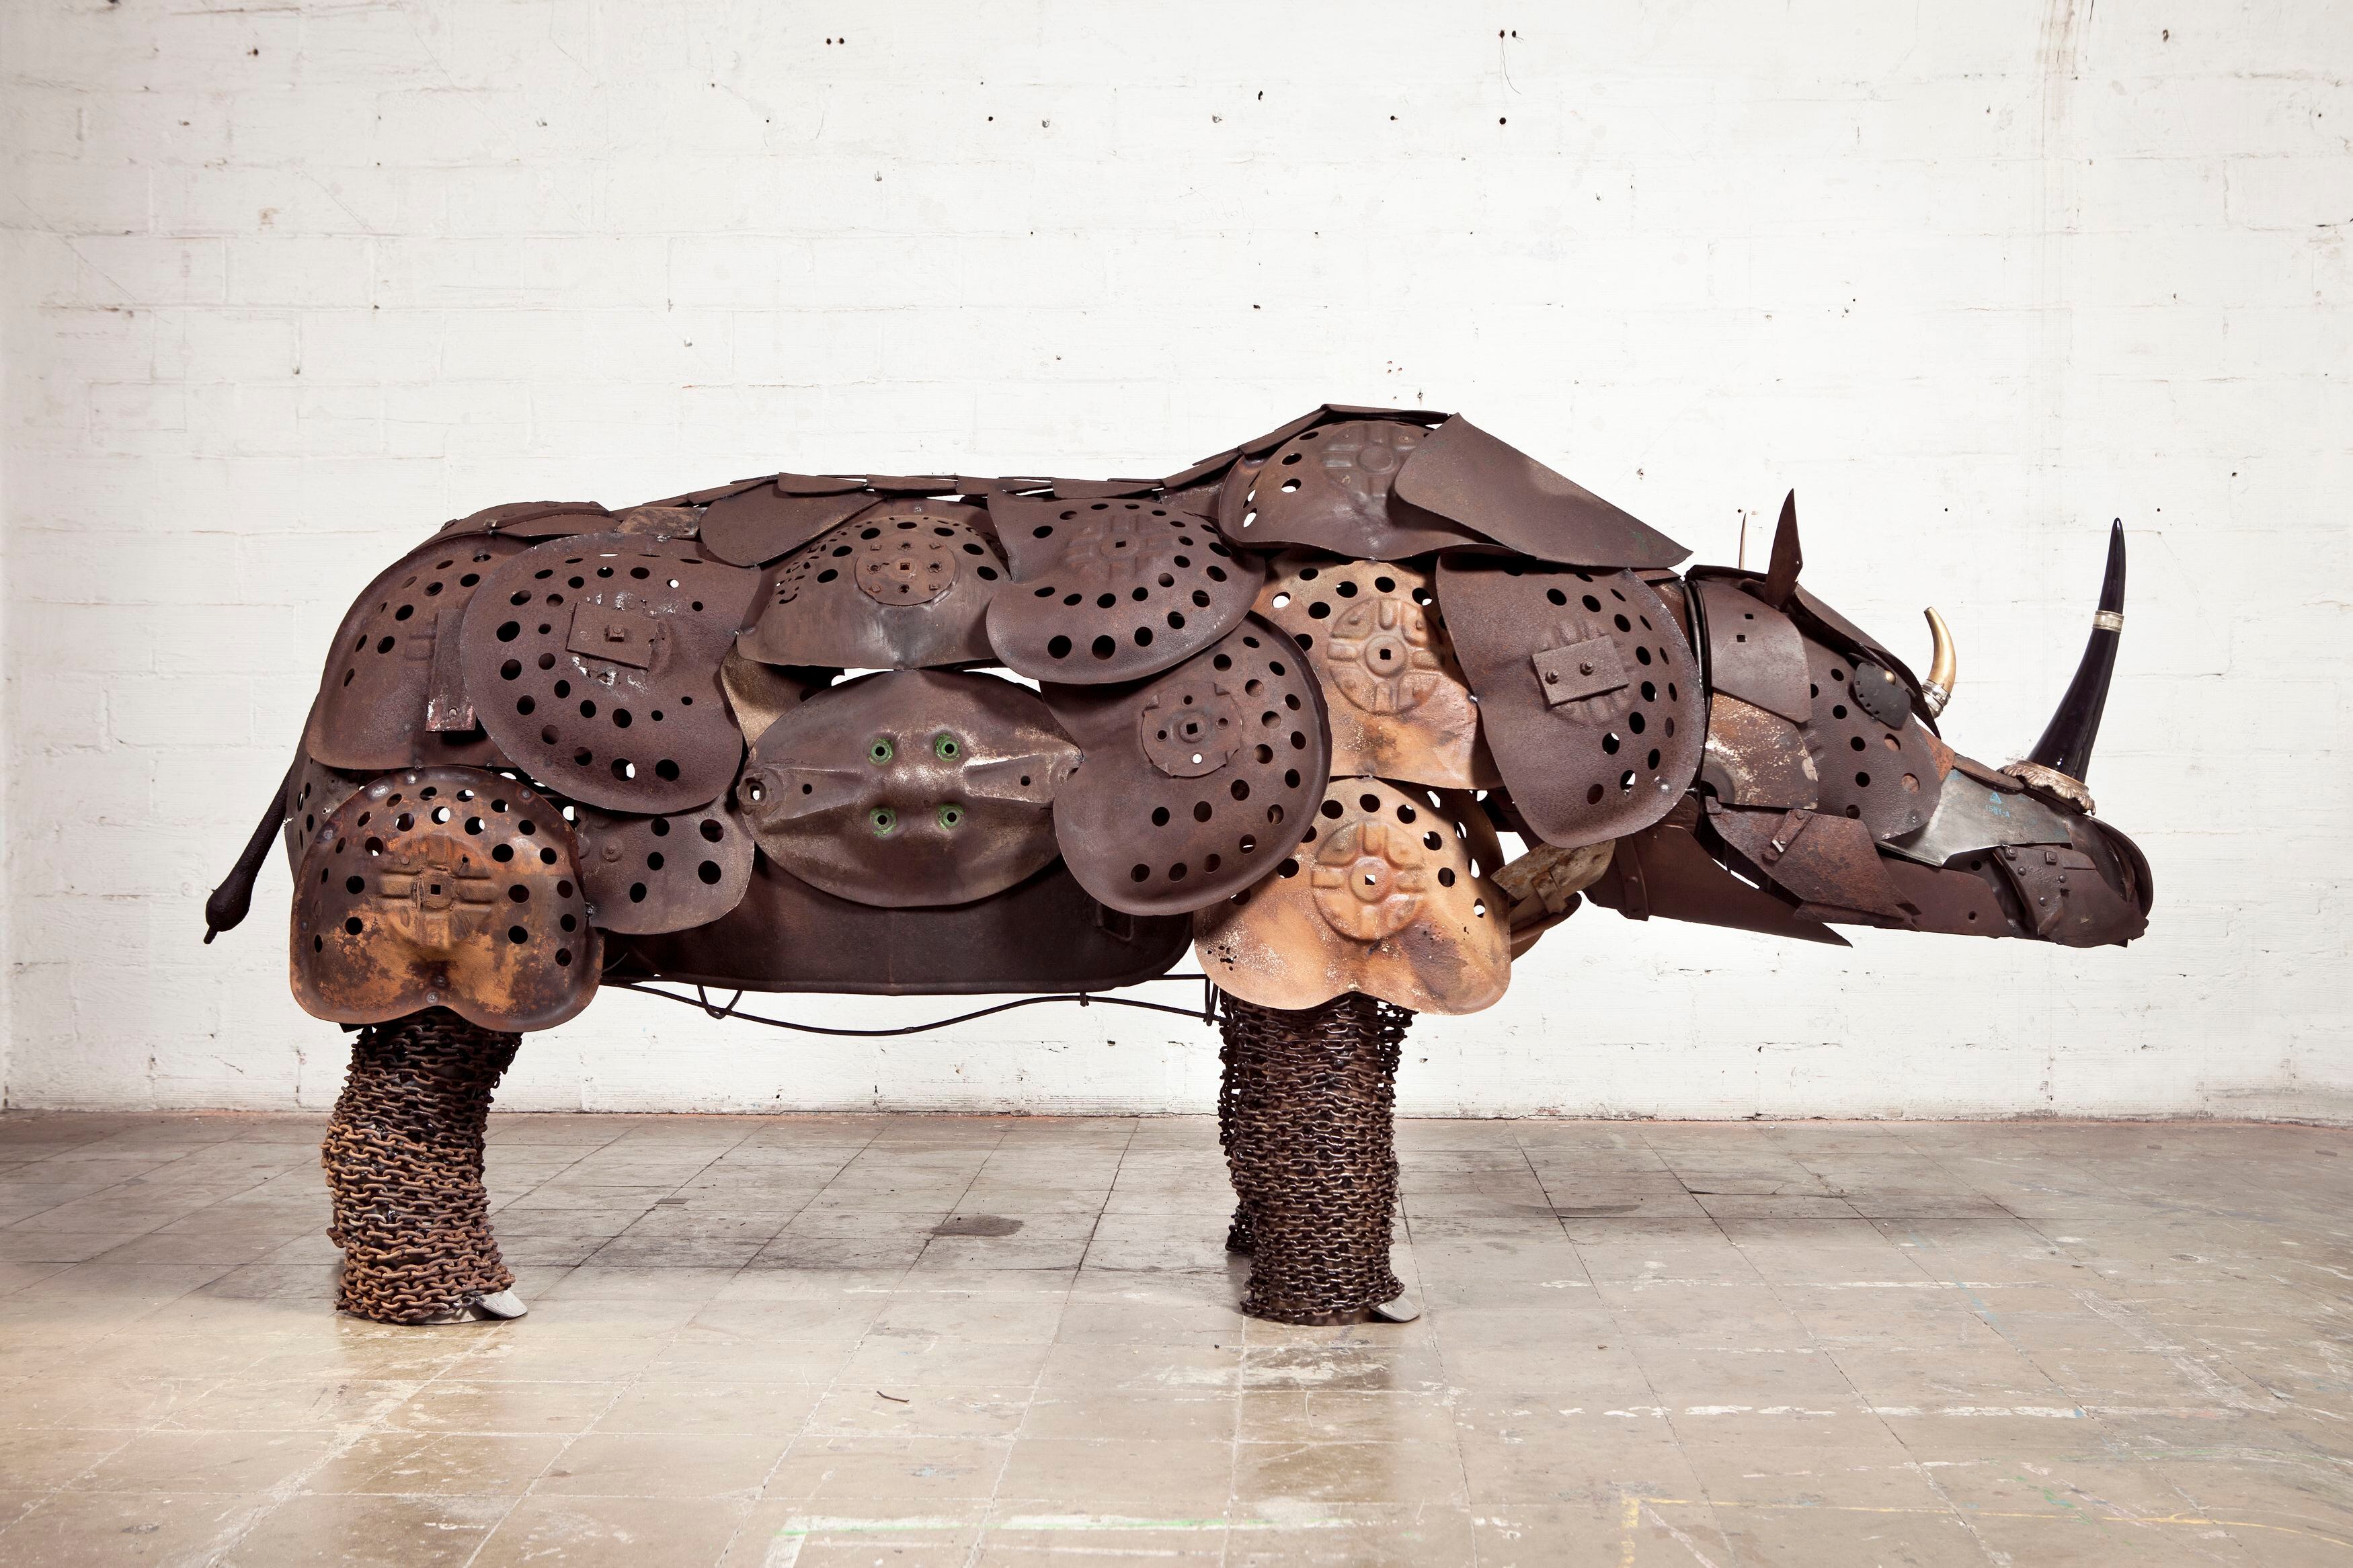 Miquel Aparici crea animales a partir de utensilios de antiguos oficios artesanales y objetos de madera y metal en desuso. En esta fotografía, el rinoceronte que realizó a partir de sillas de tractor antiguas.